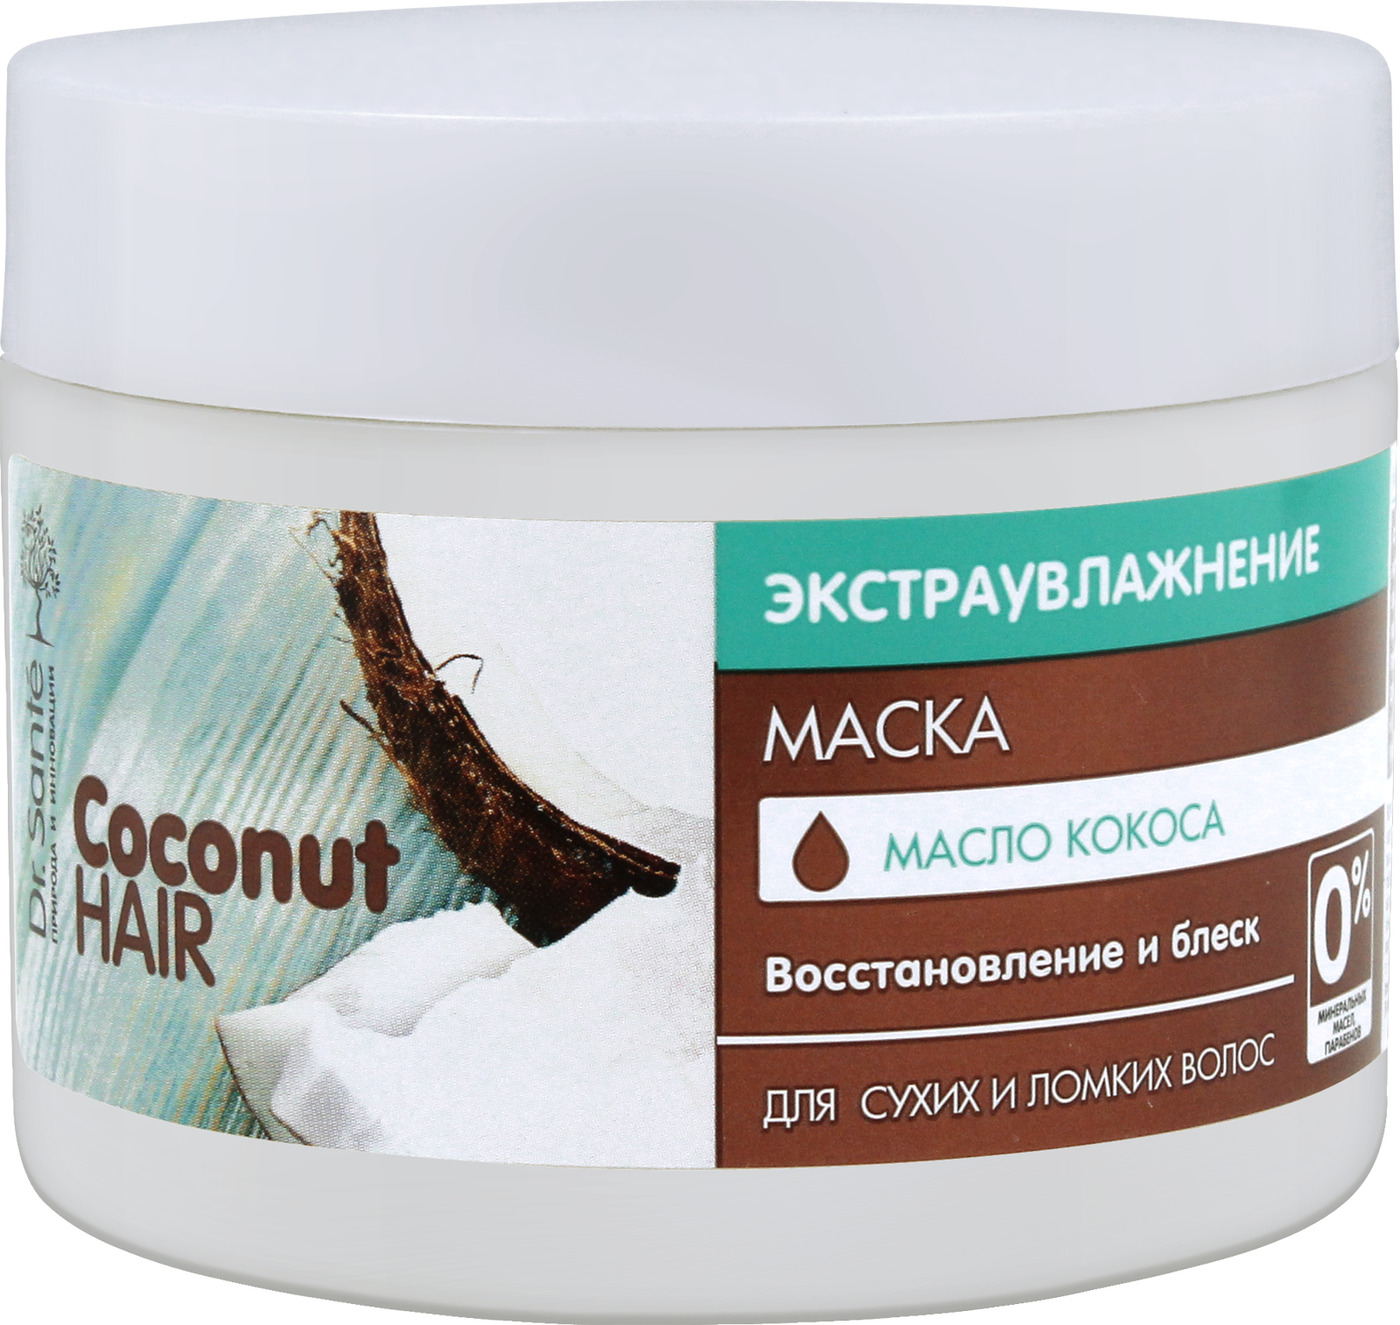 Маска для волос dr. Маска Кокос Dr sante. Маска Dr.sante Coconut hair 300 мл. Маска для волос доктор Санте Кокос. Dr sante Coconut hair маска для волос.